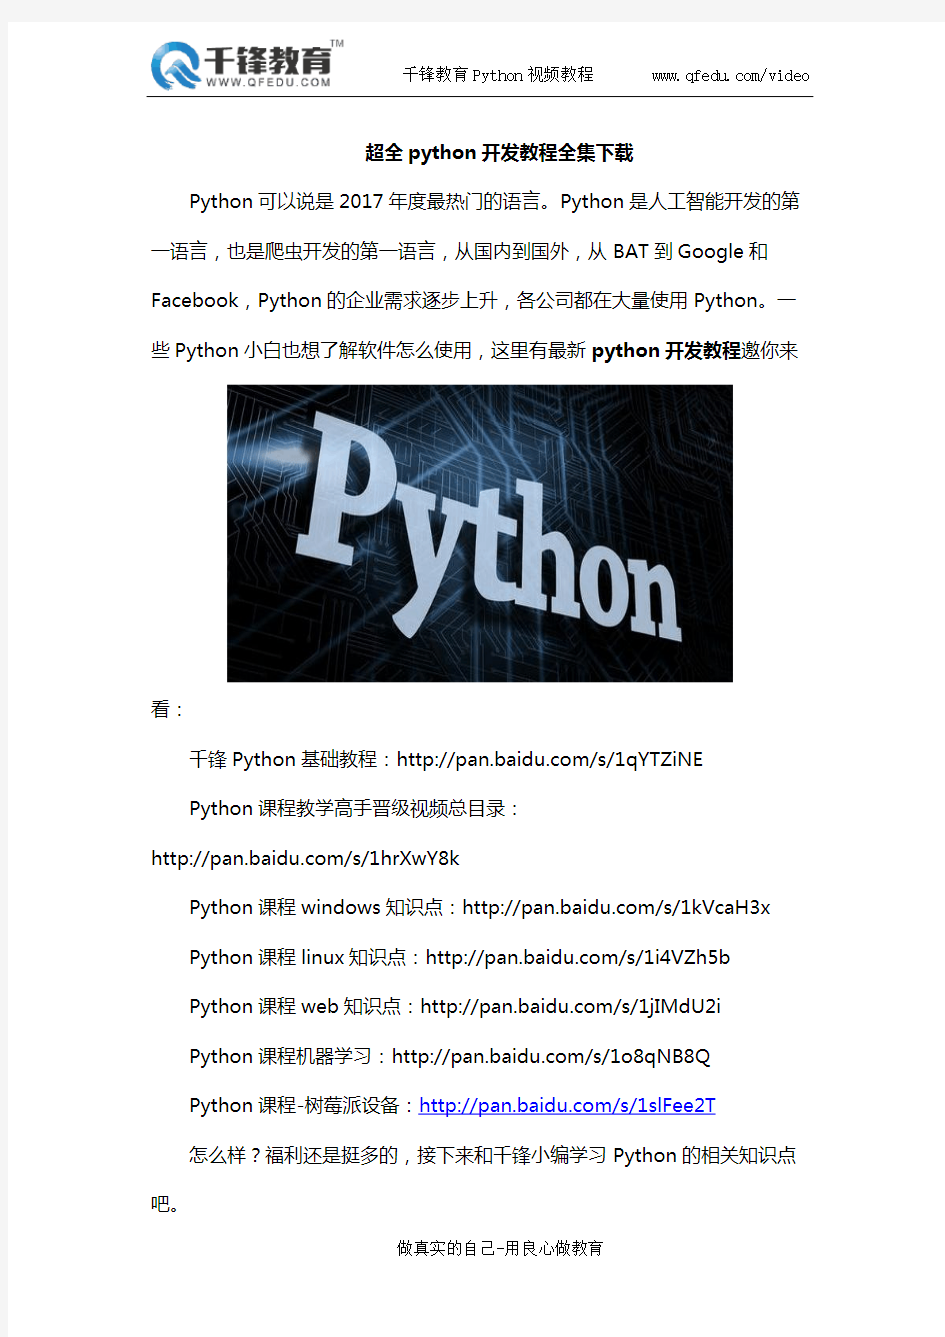 超全python开发教程全集下载